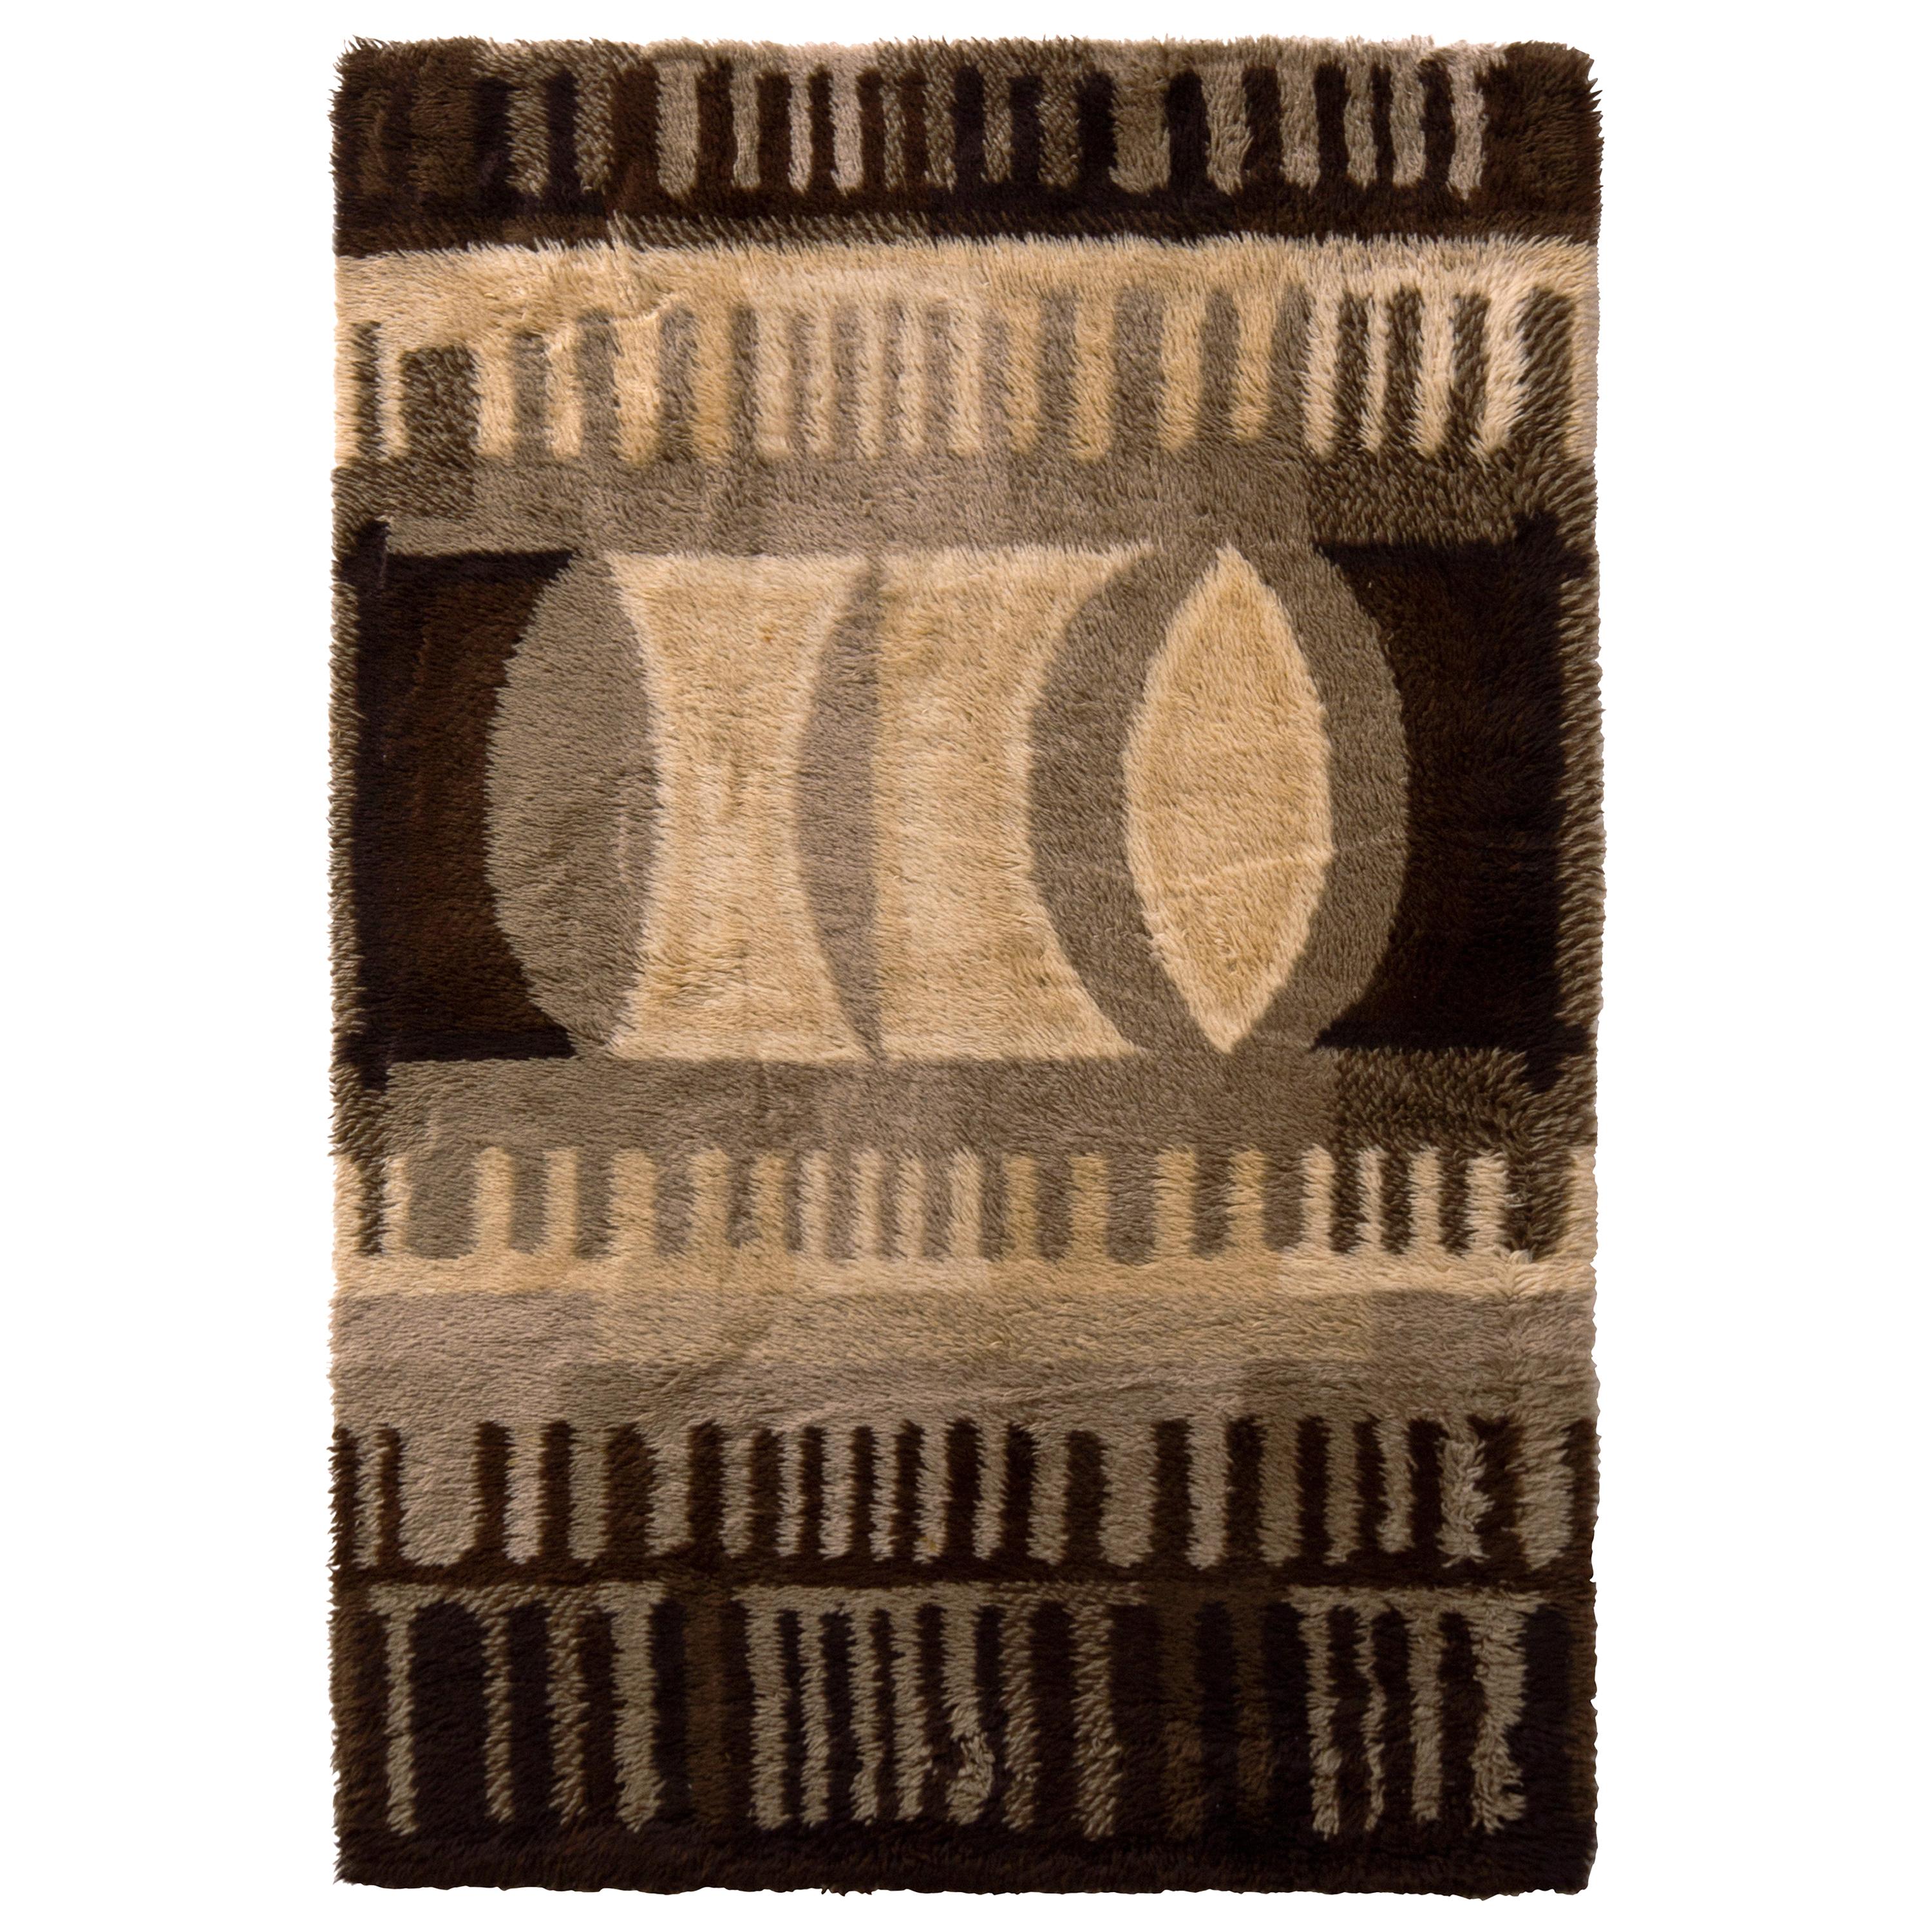 1950er Jahre Vintage Ege Rya Teppich Braun Midcentury Geometrisches Muster von Teppich & Kelim